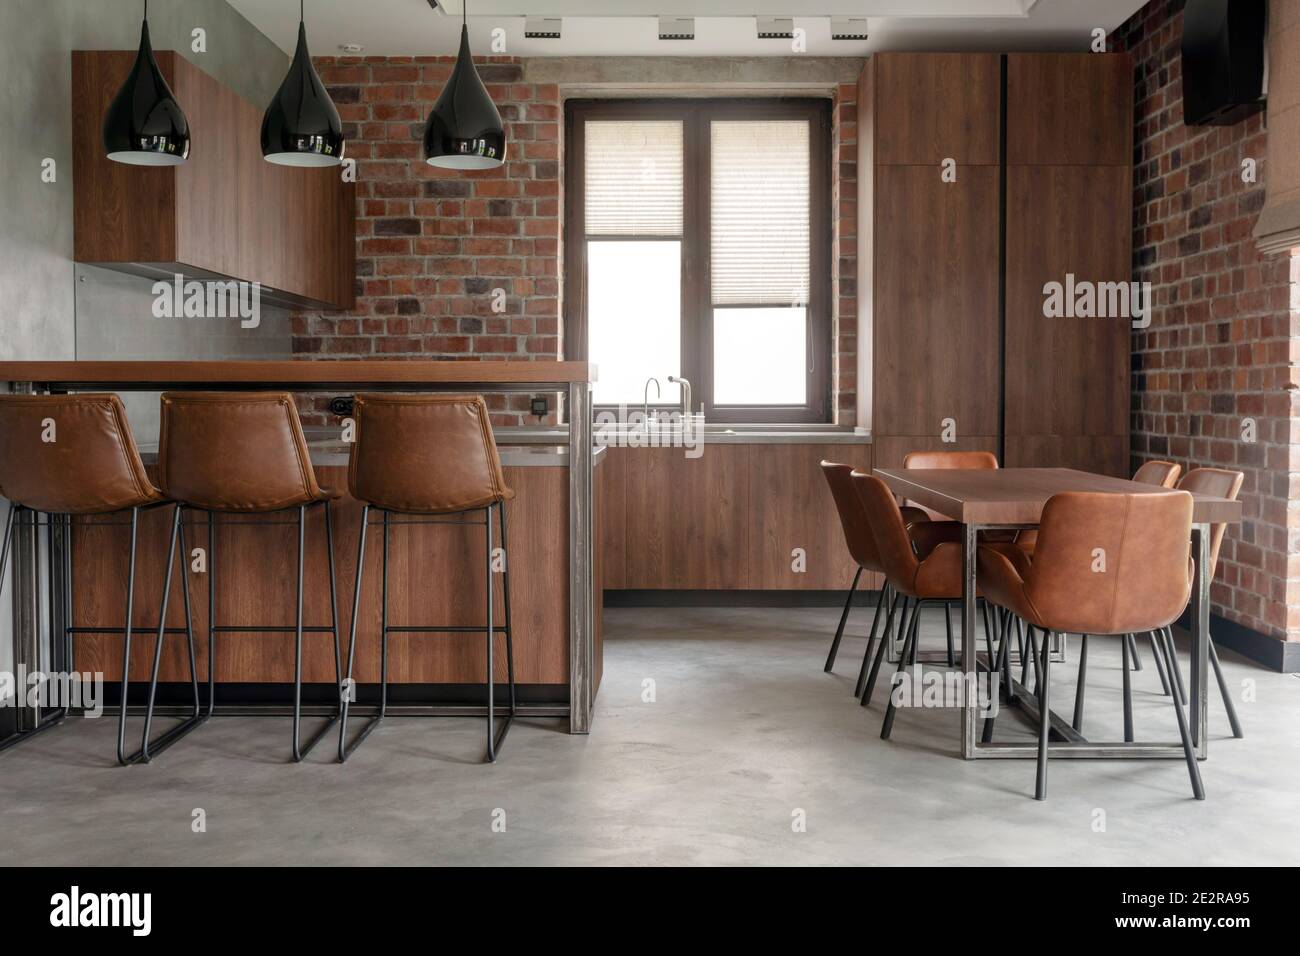 Moderne Inneneinrichtung in hellen geräumigen Speisesaal einschließlich braun Holzmöbel mit Barhocker an der Theke und weiche, bequeme Stühle an Stockfoto